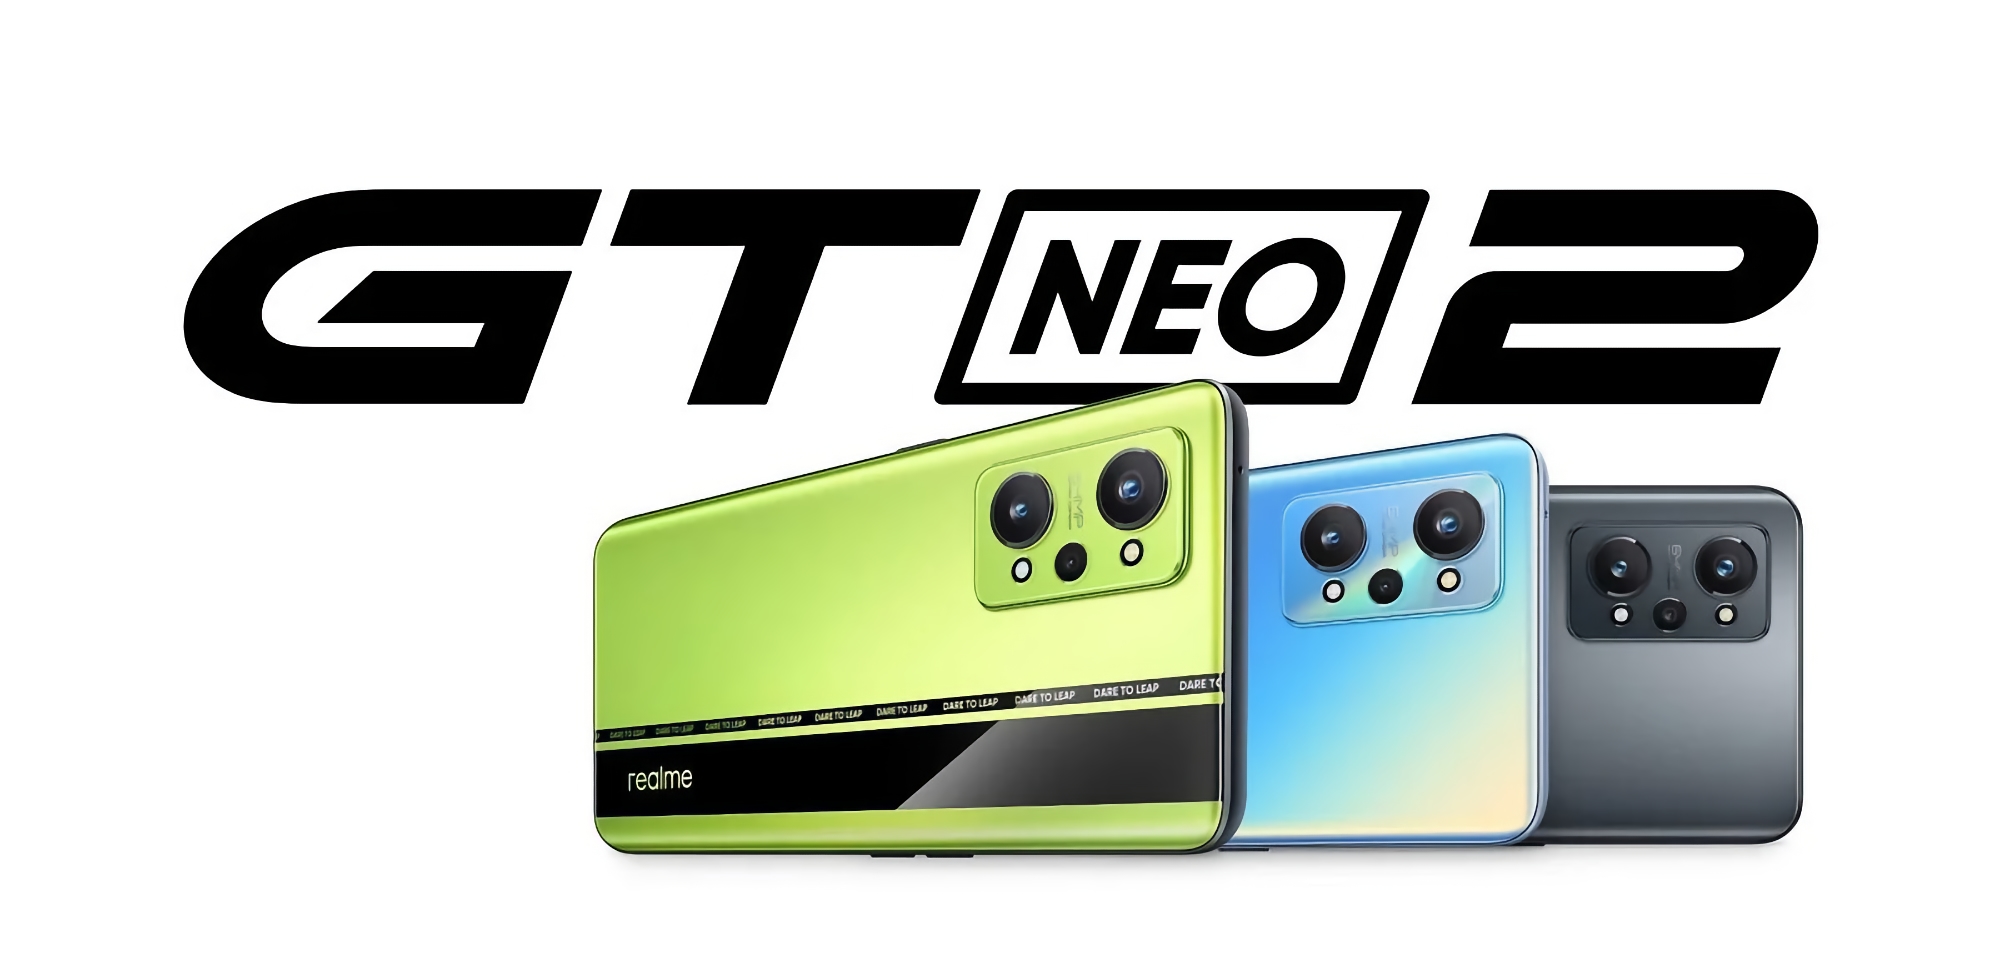 Офіційно: Realme GT Neo 2 з чіпом Snapdragon 870 та потрійною камерою на 64 МП презентують у Європі 15 листопада